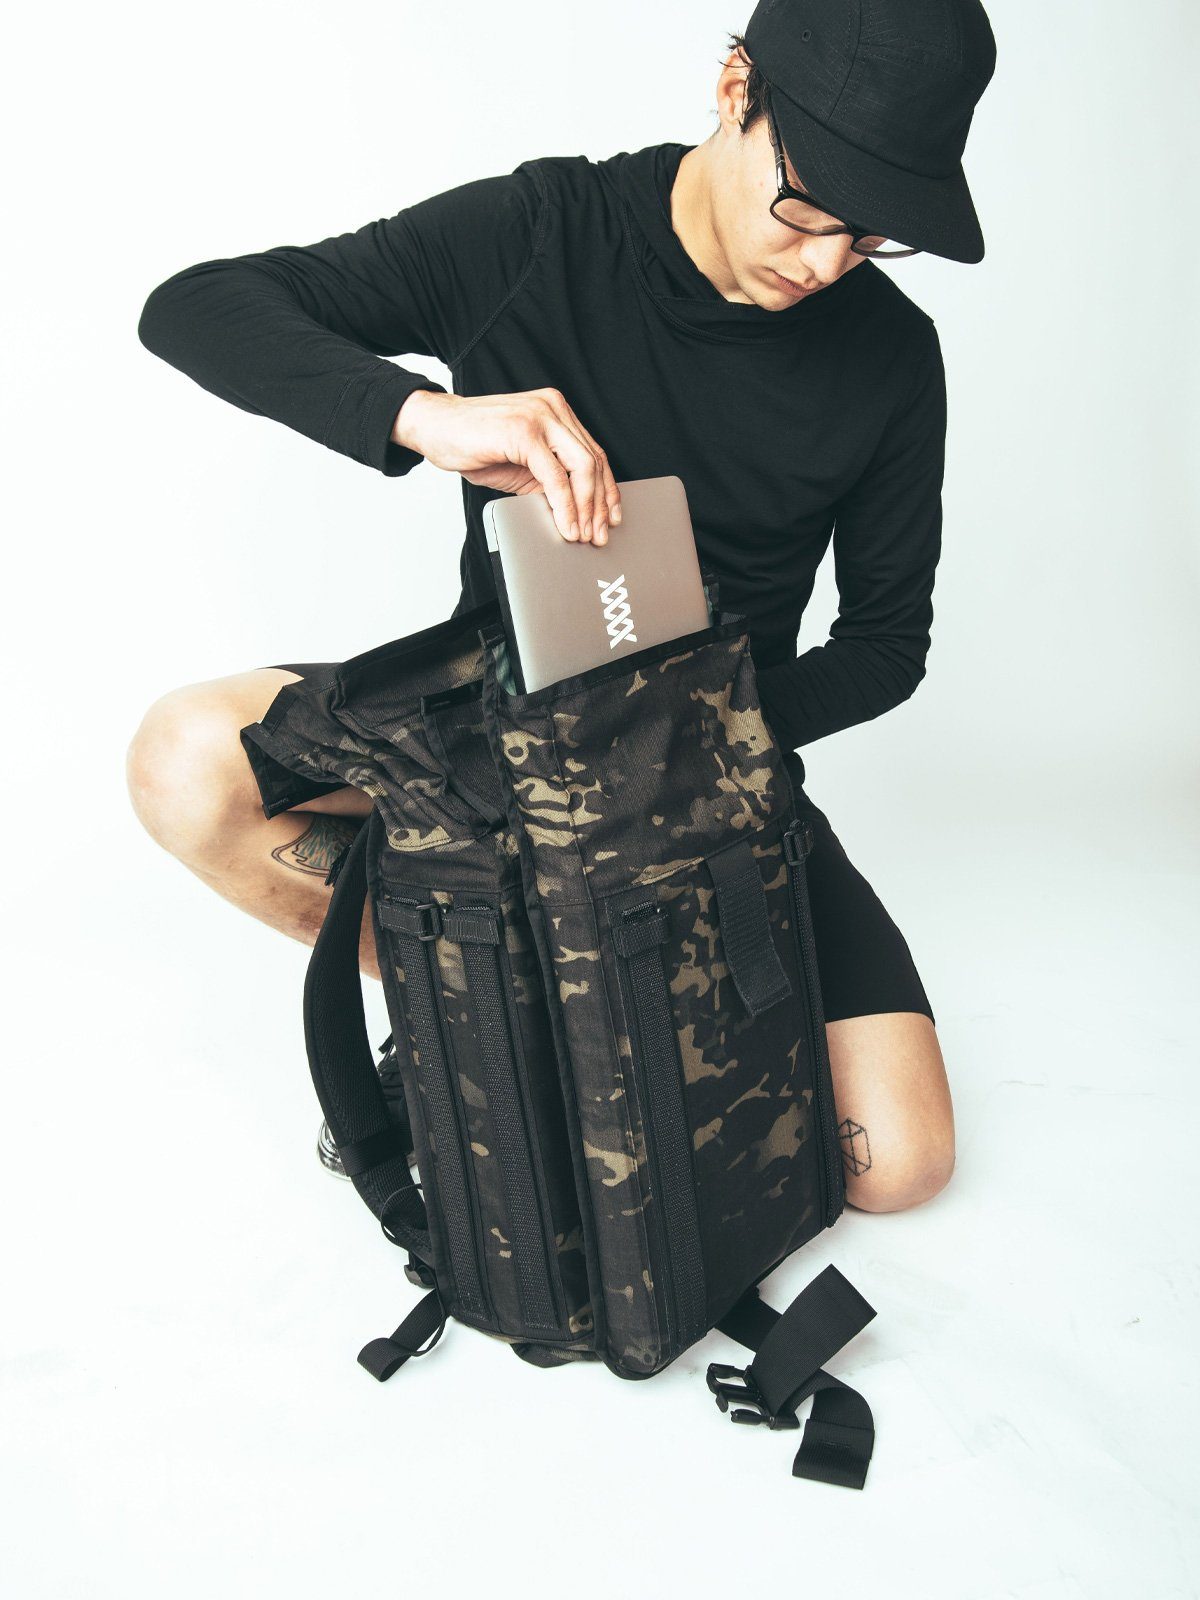 Arkiv Laptop Case by Mission Workshop - Säänkestävät laukut ja tekniset vaatteet - San Francisco & Los Angeles - Rakennettu kestämään - ikuinen takuu